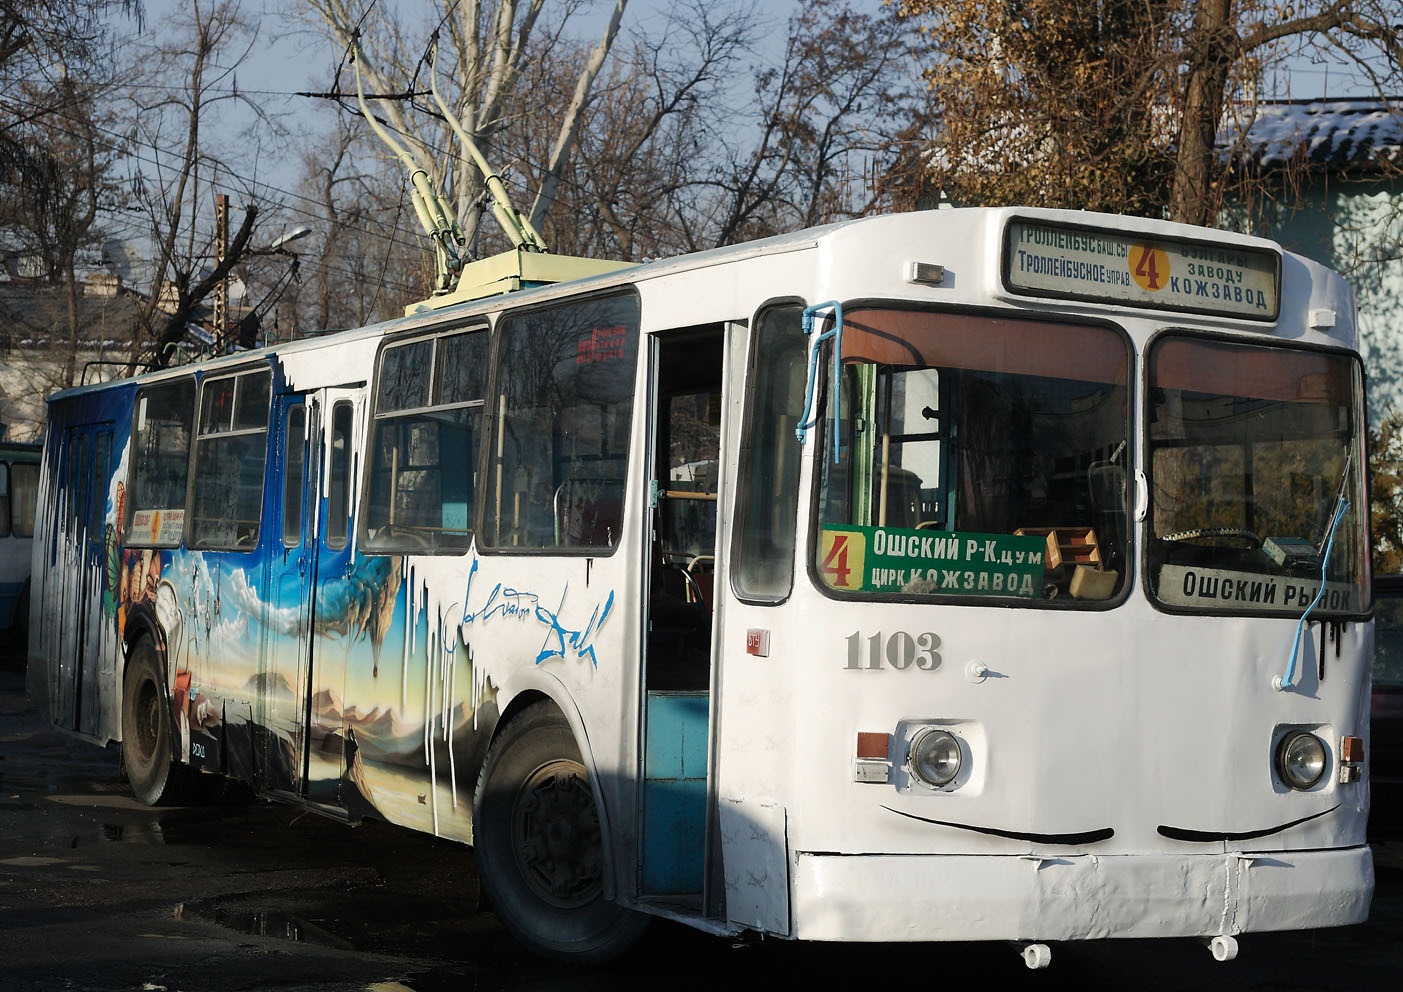 Biskek, ZiU-682G [G00] — 1103